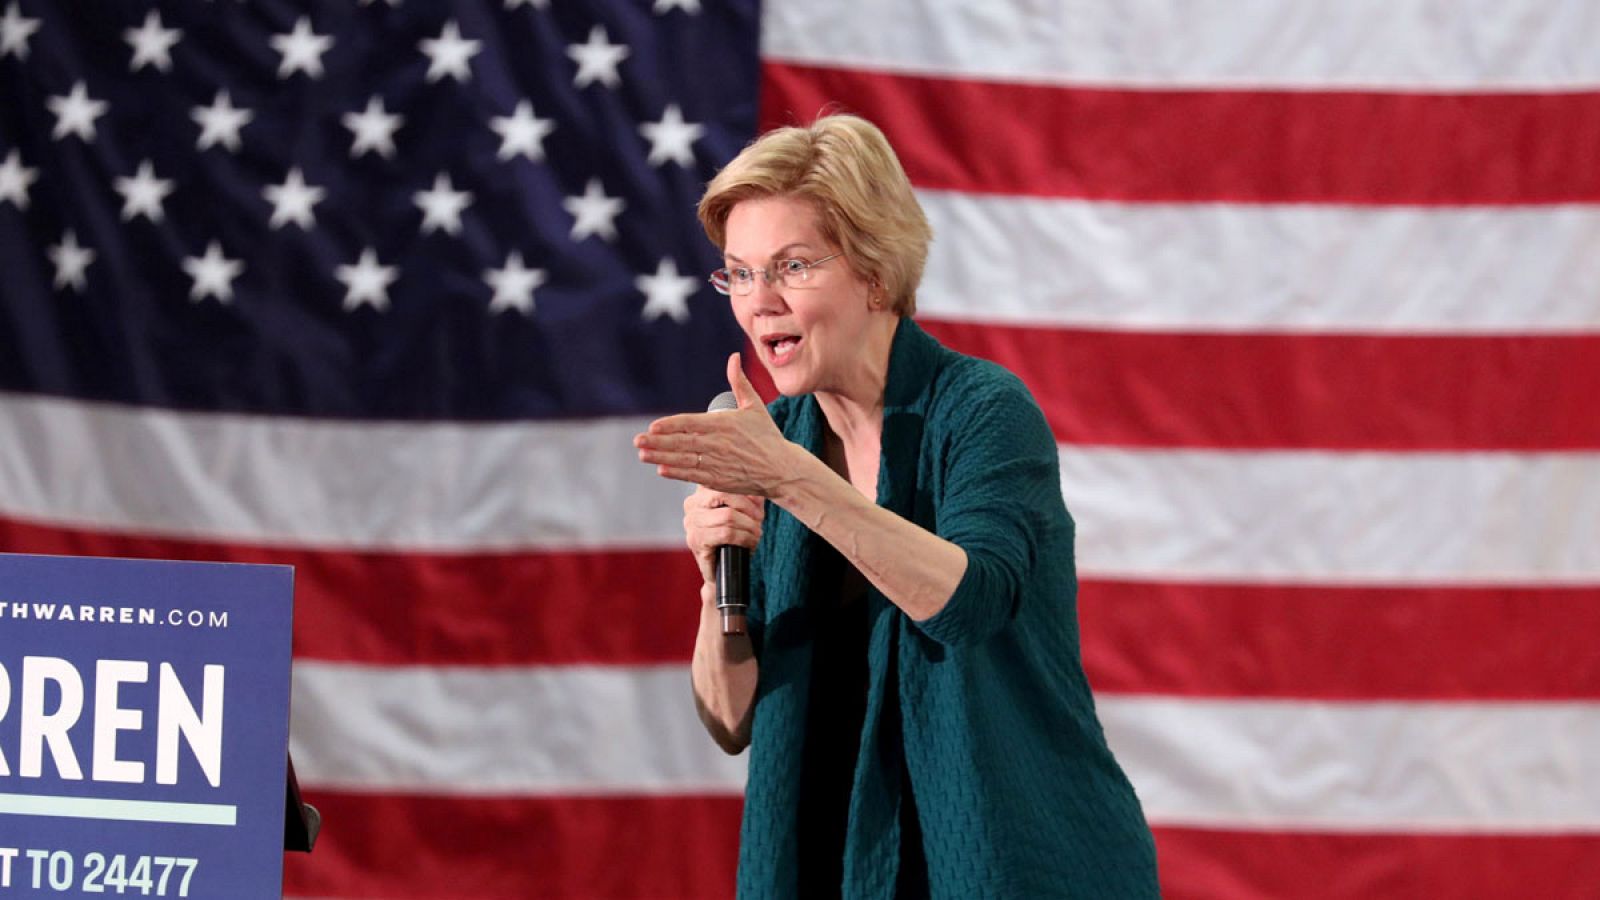 La senadora y aspirante demócrata a la candidatura presidencial para 2020, Elizabeth Warren, en una imagen de marzo de 2019.